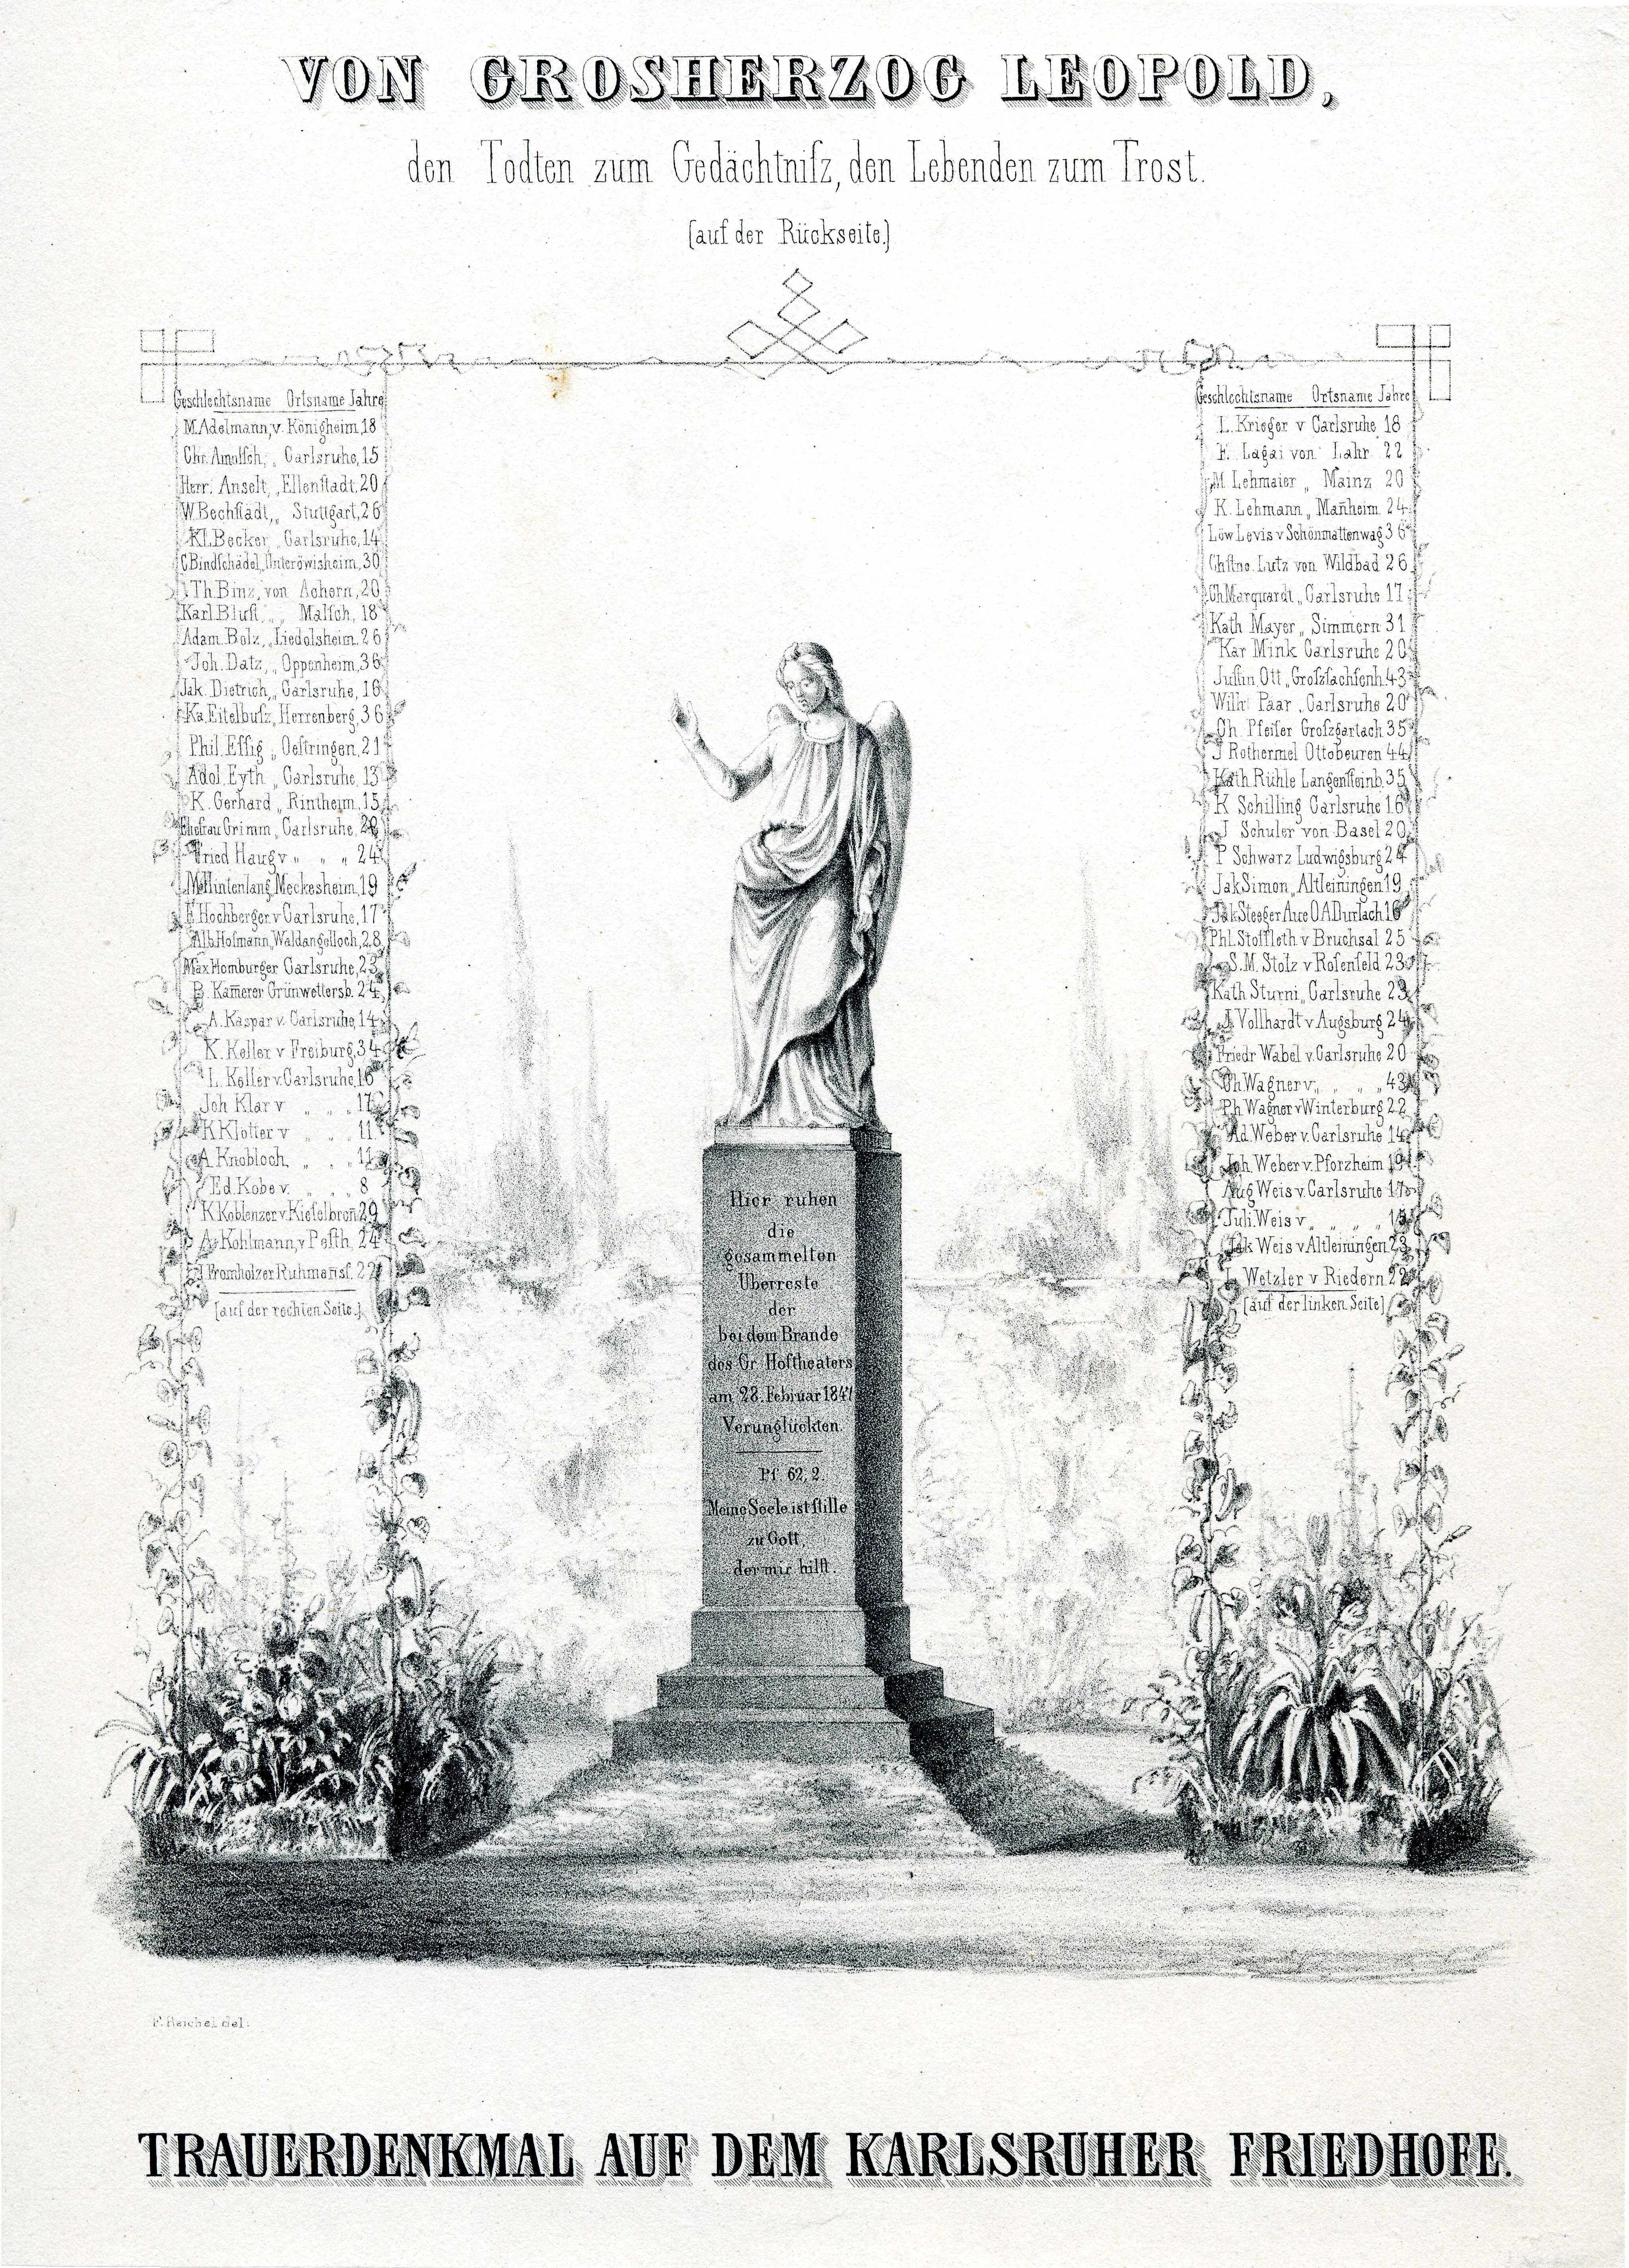 Grafik "Trauerdenkmal auf dem Karlsruher Friedhof" (Museum für Sepulkralkultur Public Domain Mark)